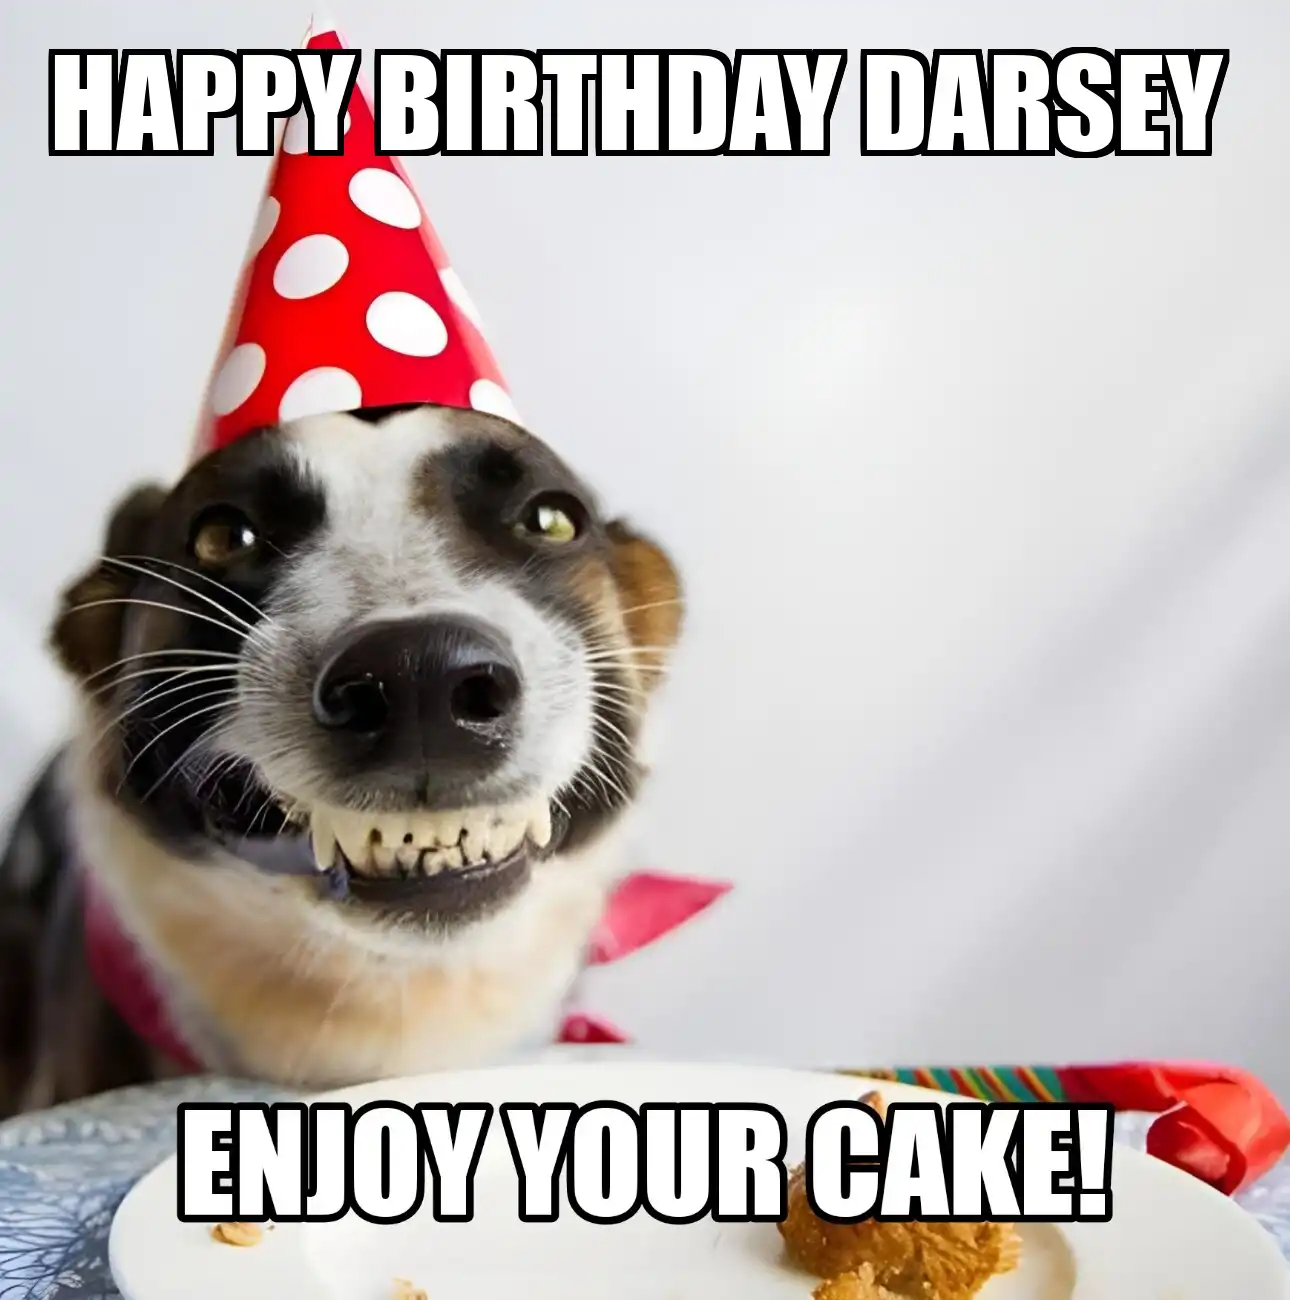 Happy Birthday Darsey Enjoy Your Cake Dog Meme